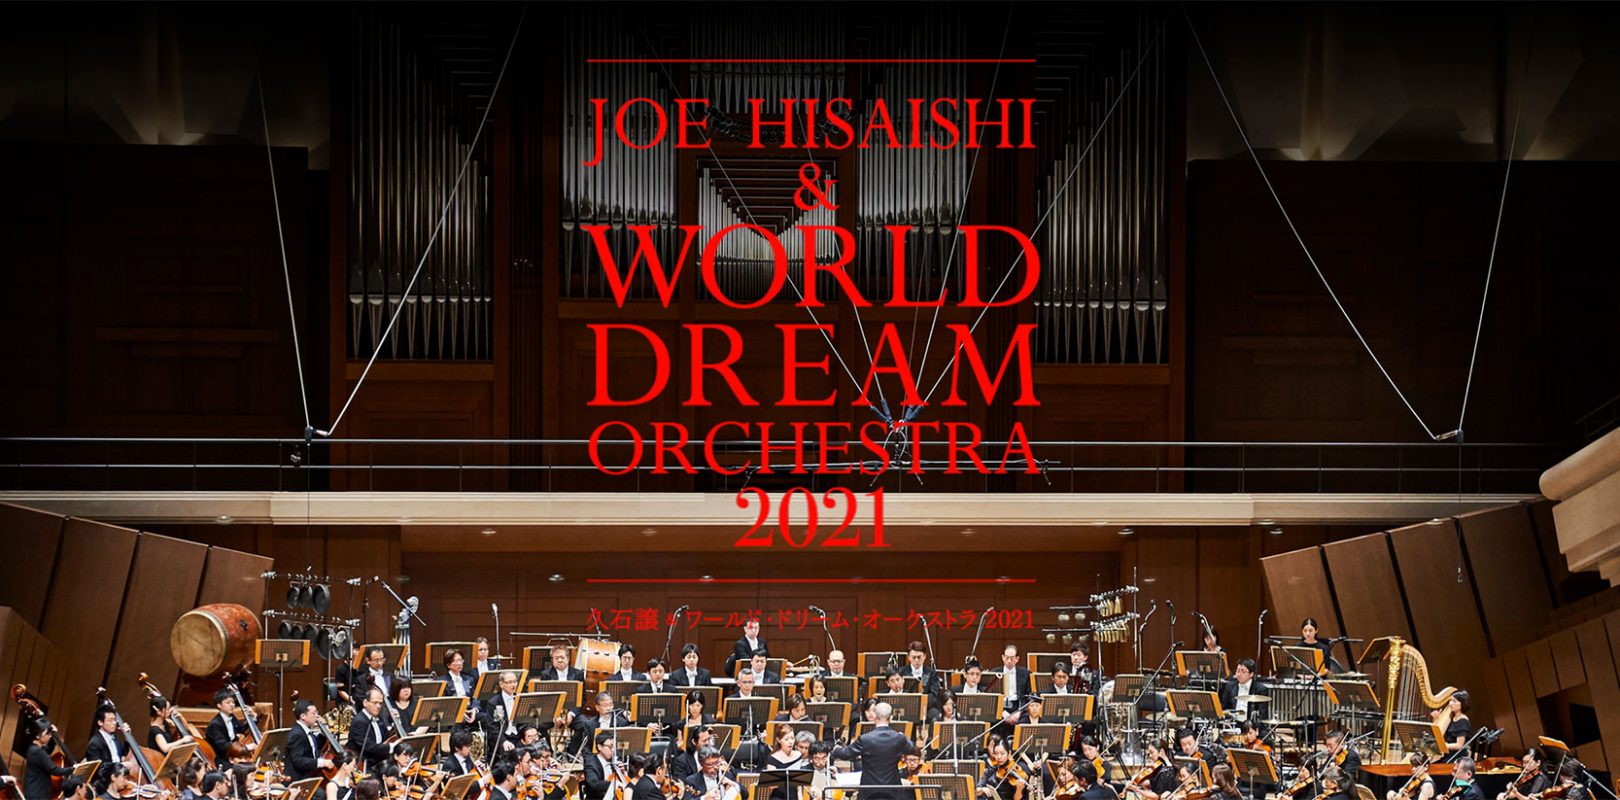 Il concerto Joe Hisaishi & World Dream Orchestra 2021 verrà distribuito